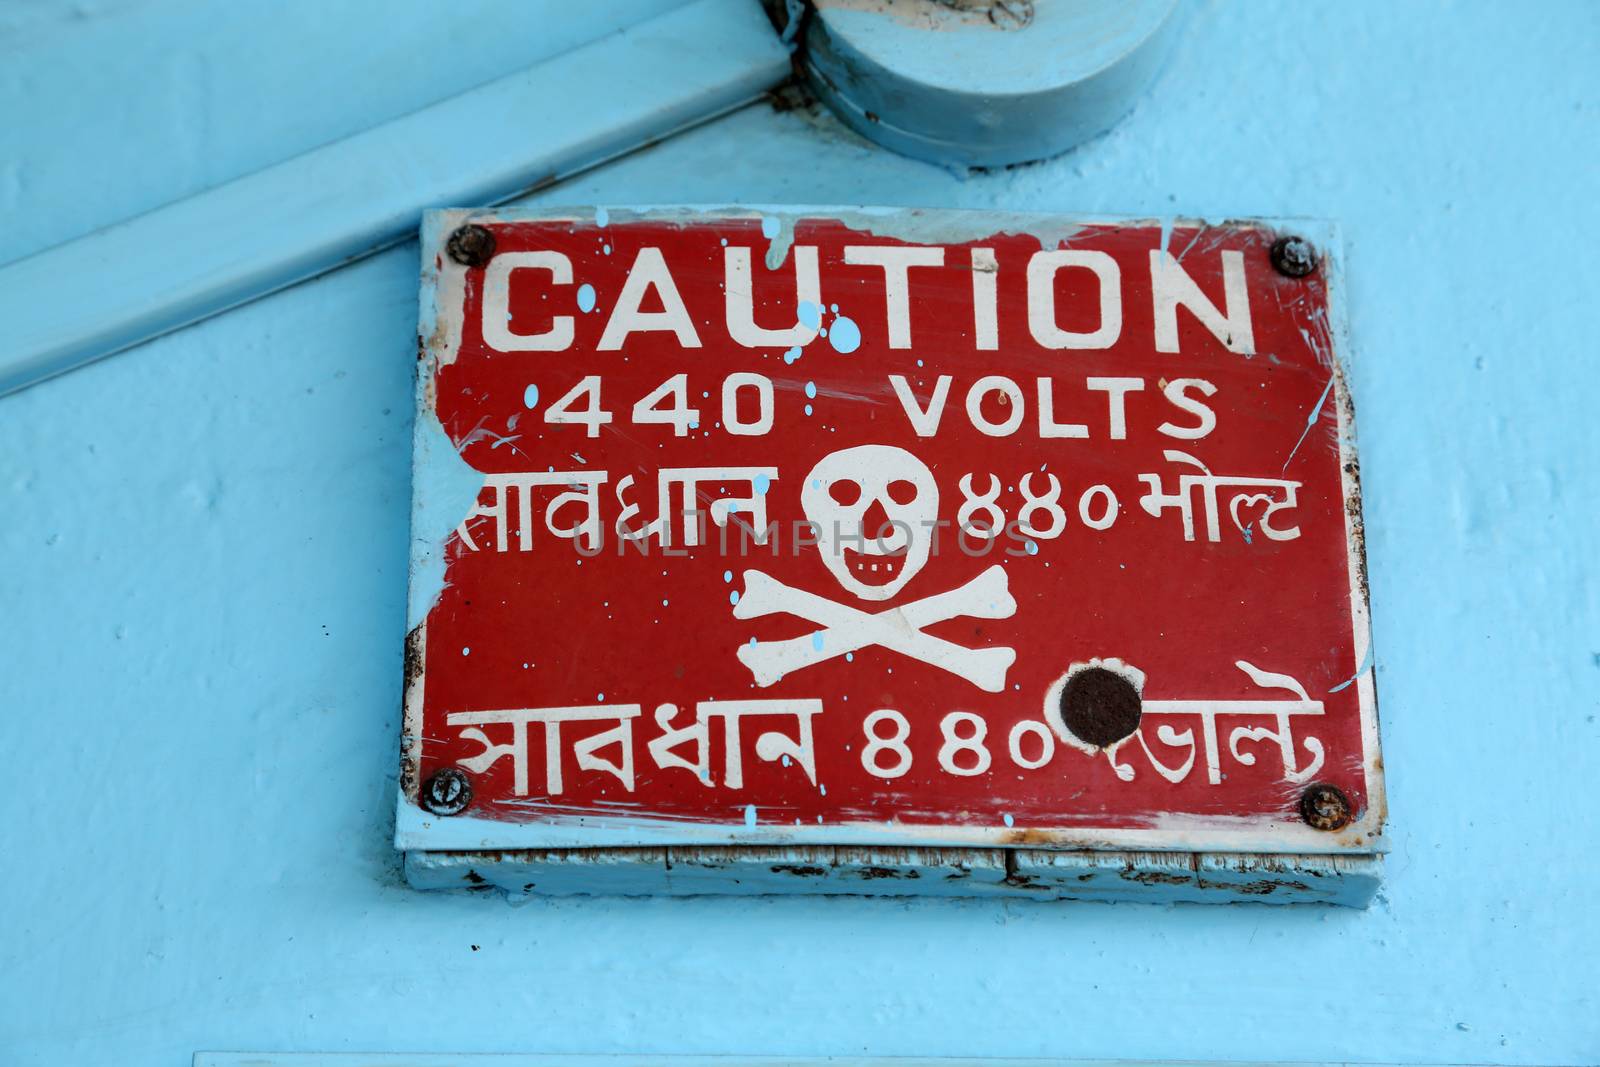 Danger warning sign